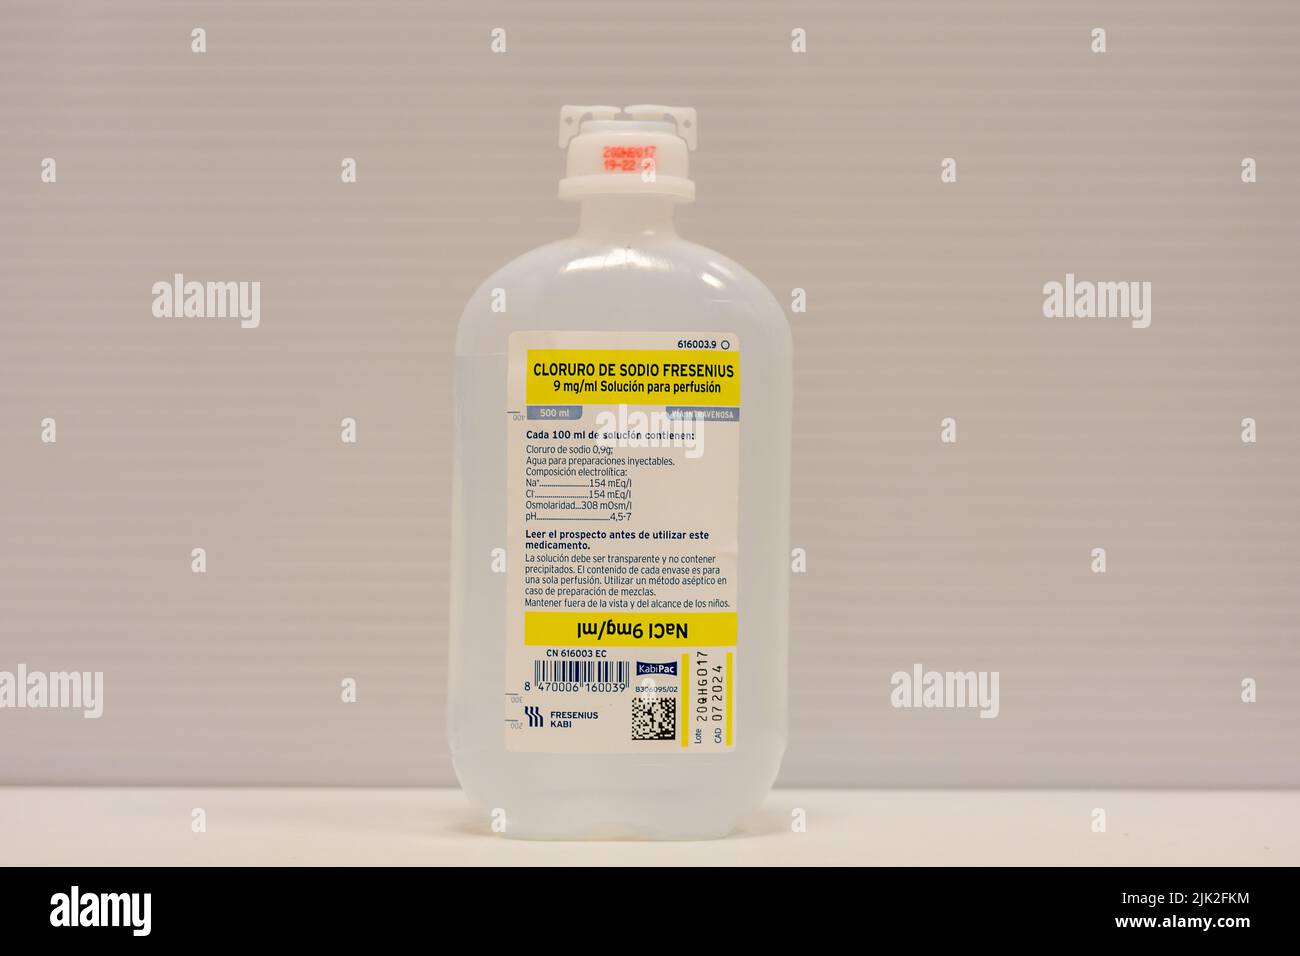 Photographie d'un flacon en plastique contenant 500 ml de sérum physiologique stérile (chlorure de sodium) pour perfusion intraveineuse Banque D'Images